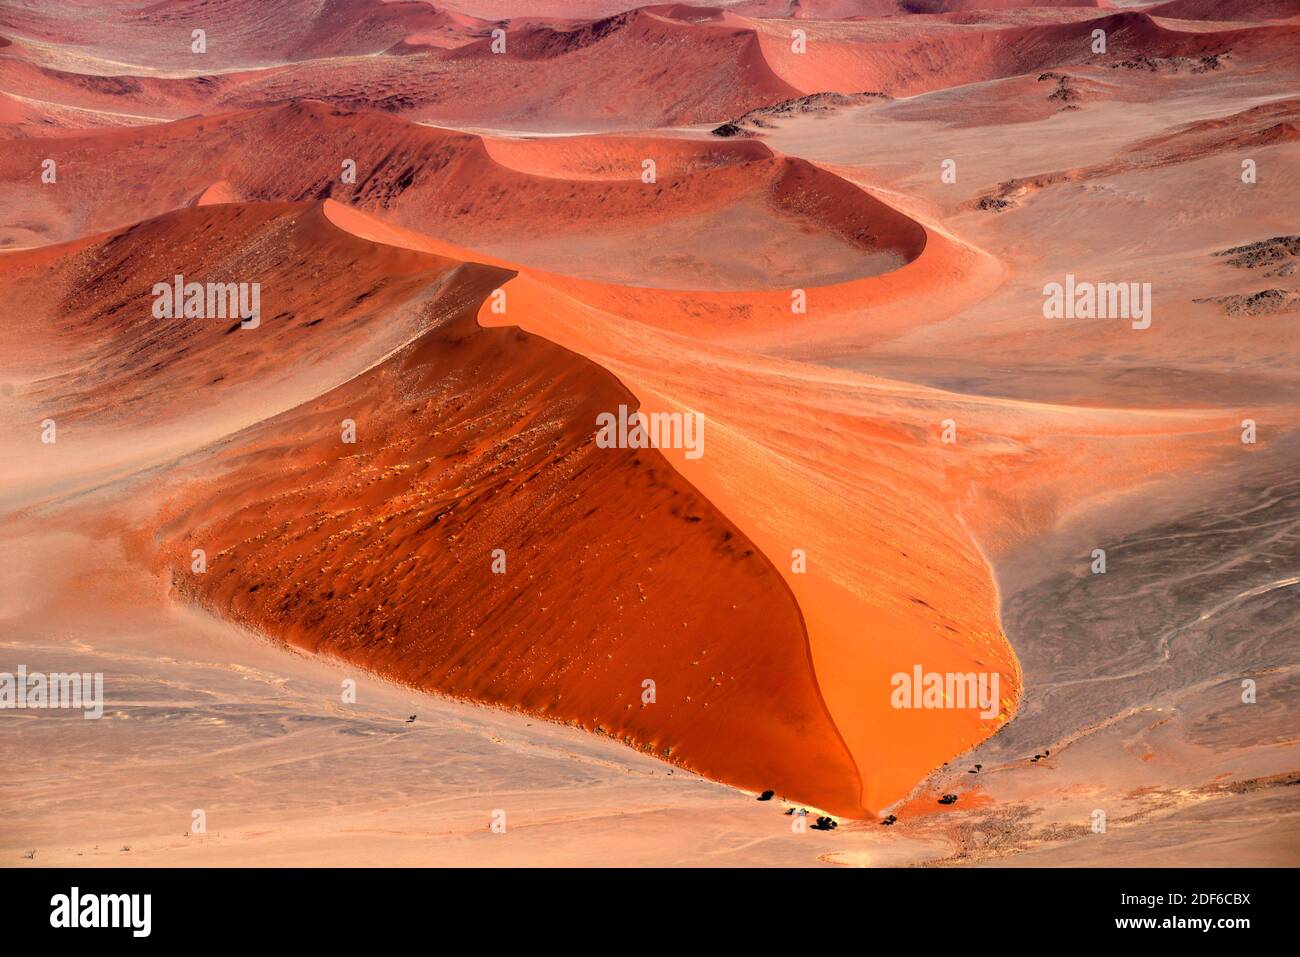 Photographie aérienne des dunes du désert du Namib. Dune est une colline de sable meuble porté pour le vent. Namibie. Banque D'Images